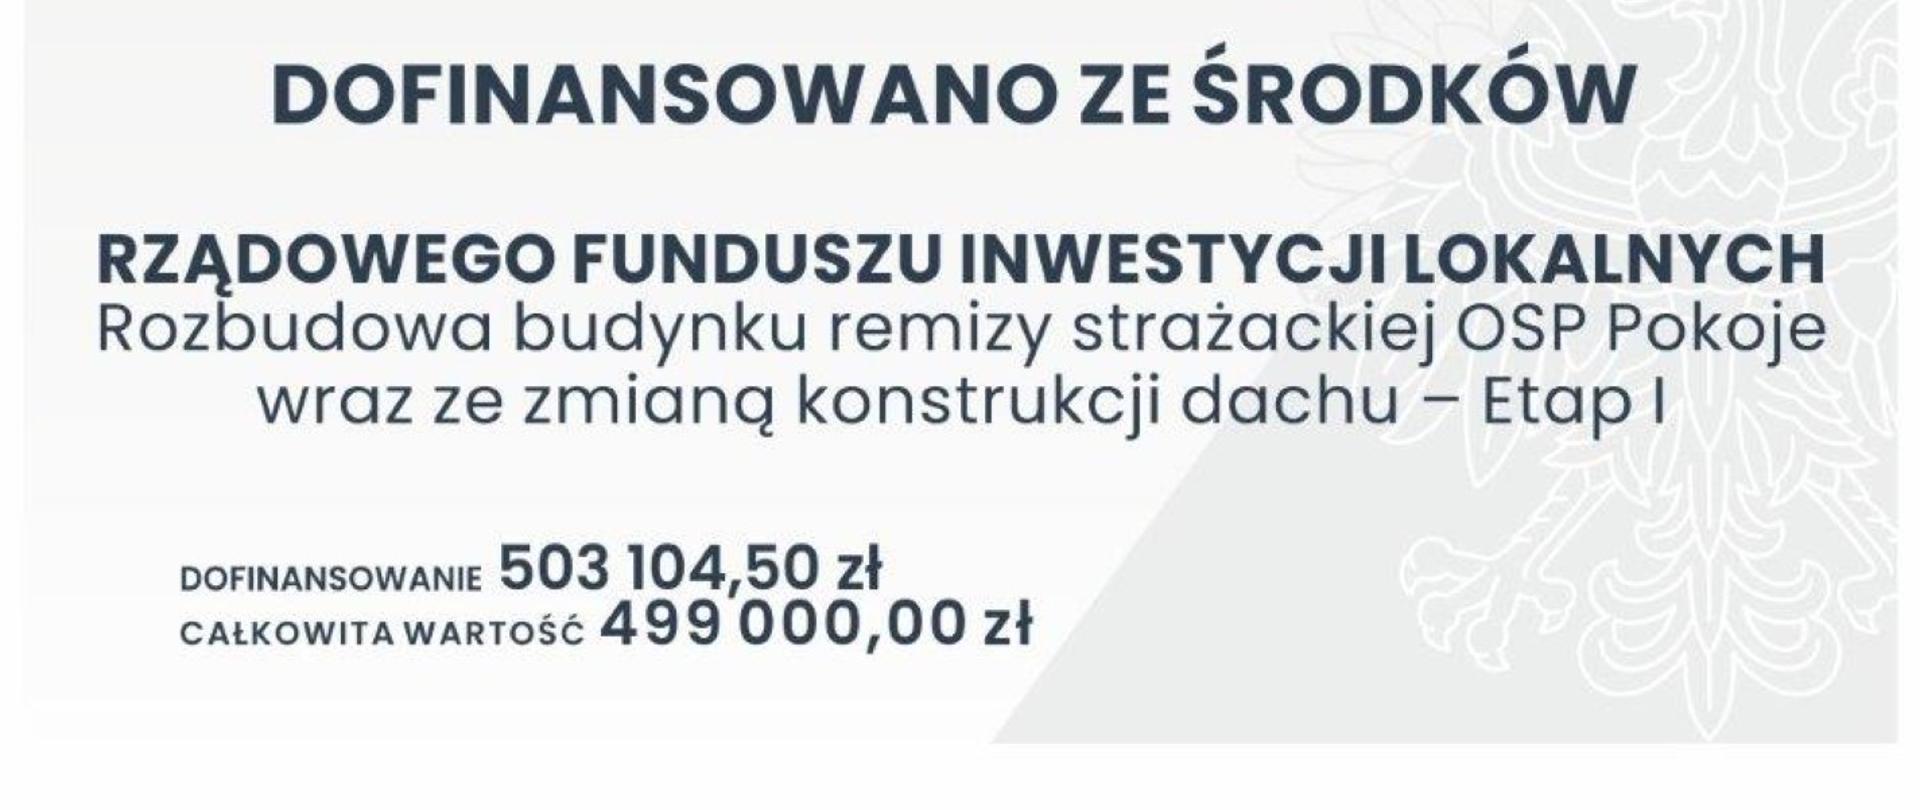 Tablica na której znajduje się flaga polski oraz godło. Poniżej pisze dofinansowano ze środków Rządowego Funduszu Inwestycji Lokalnych. Rozbudowa budynku remizy strażackiej OSP pokoje wraz ze zmianą konstrukcji dachu - Etap 1